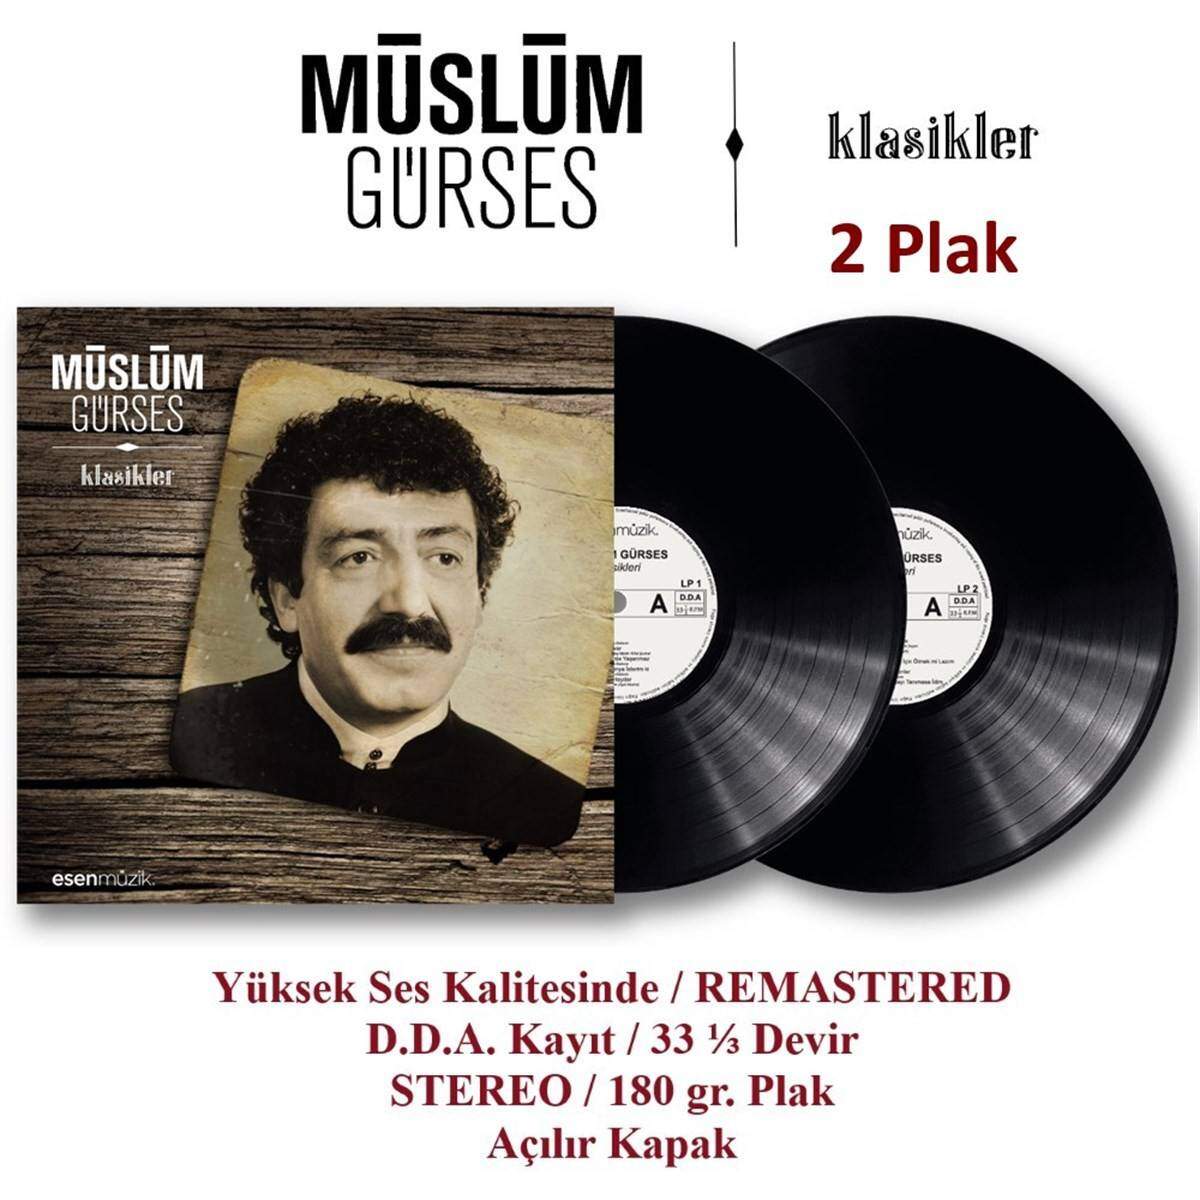 Müslüm Gürses-Sandik (Vinyl Record LP Plak) : : Home & Kitchen